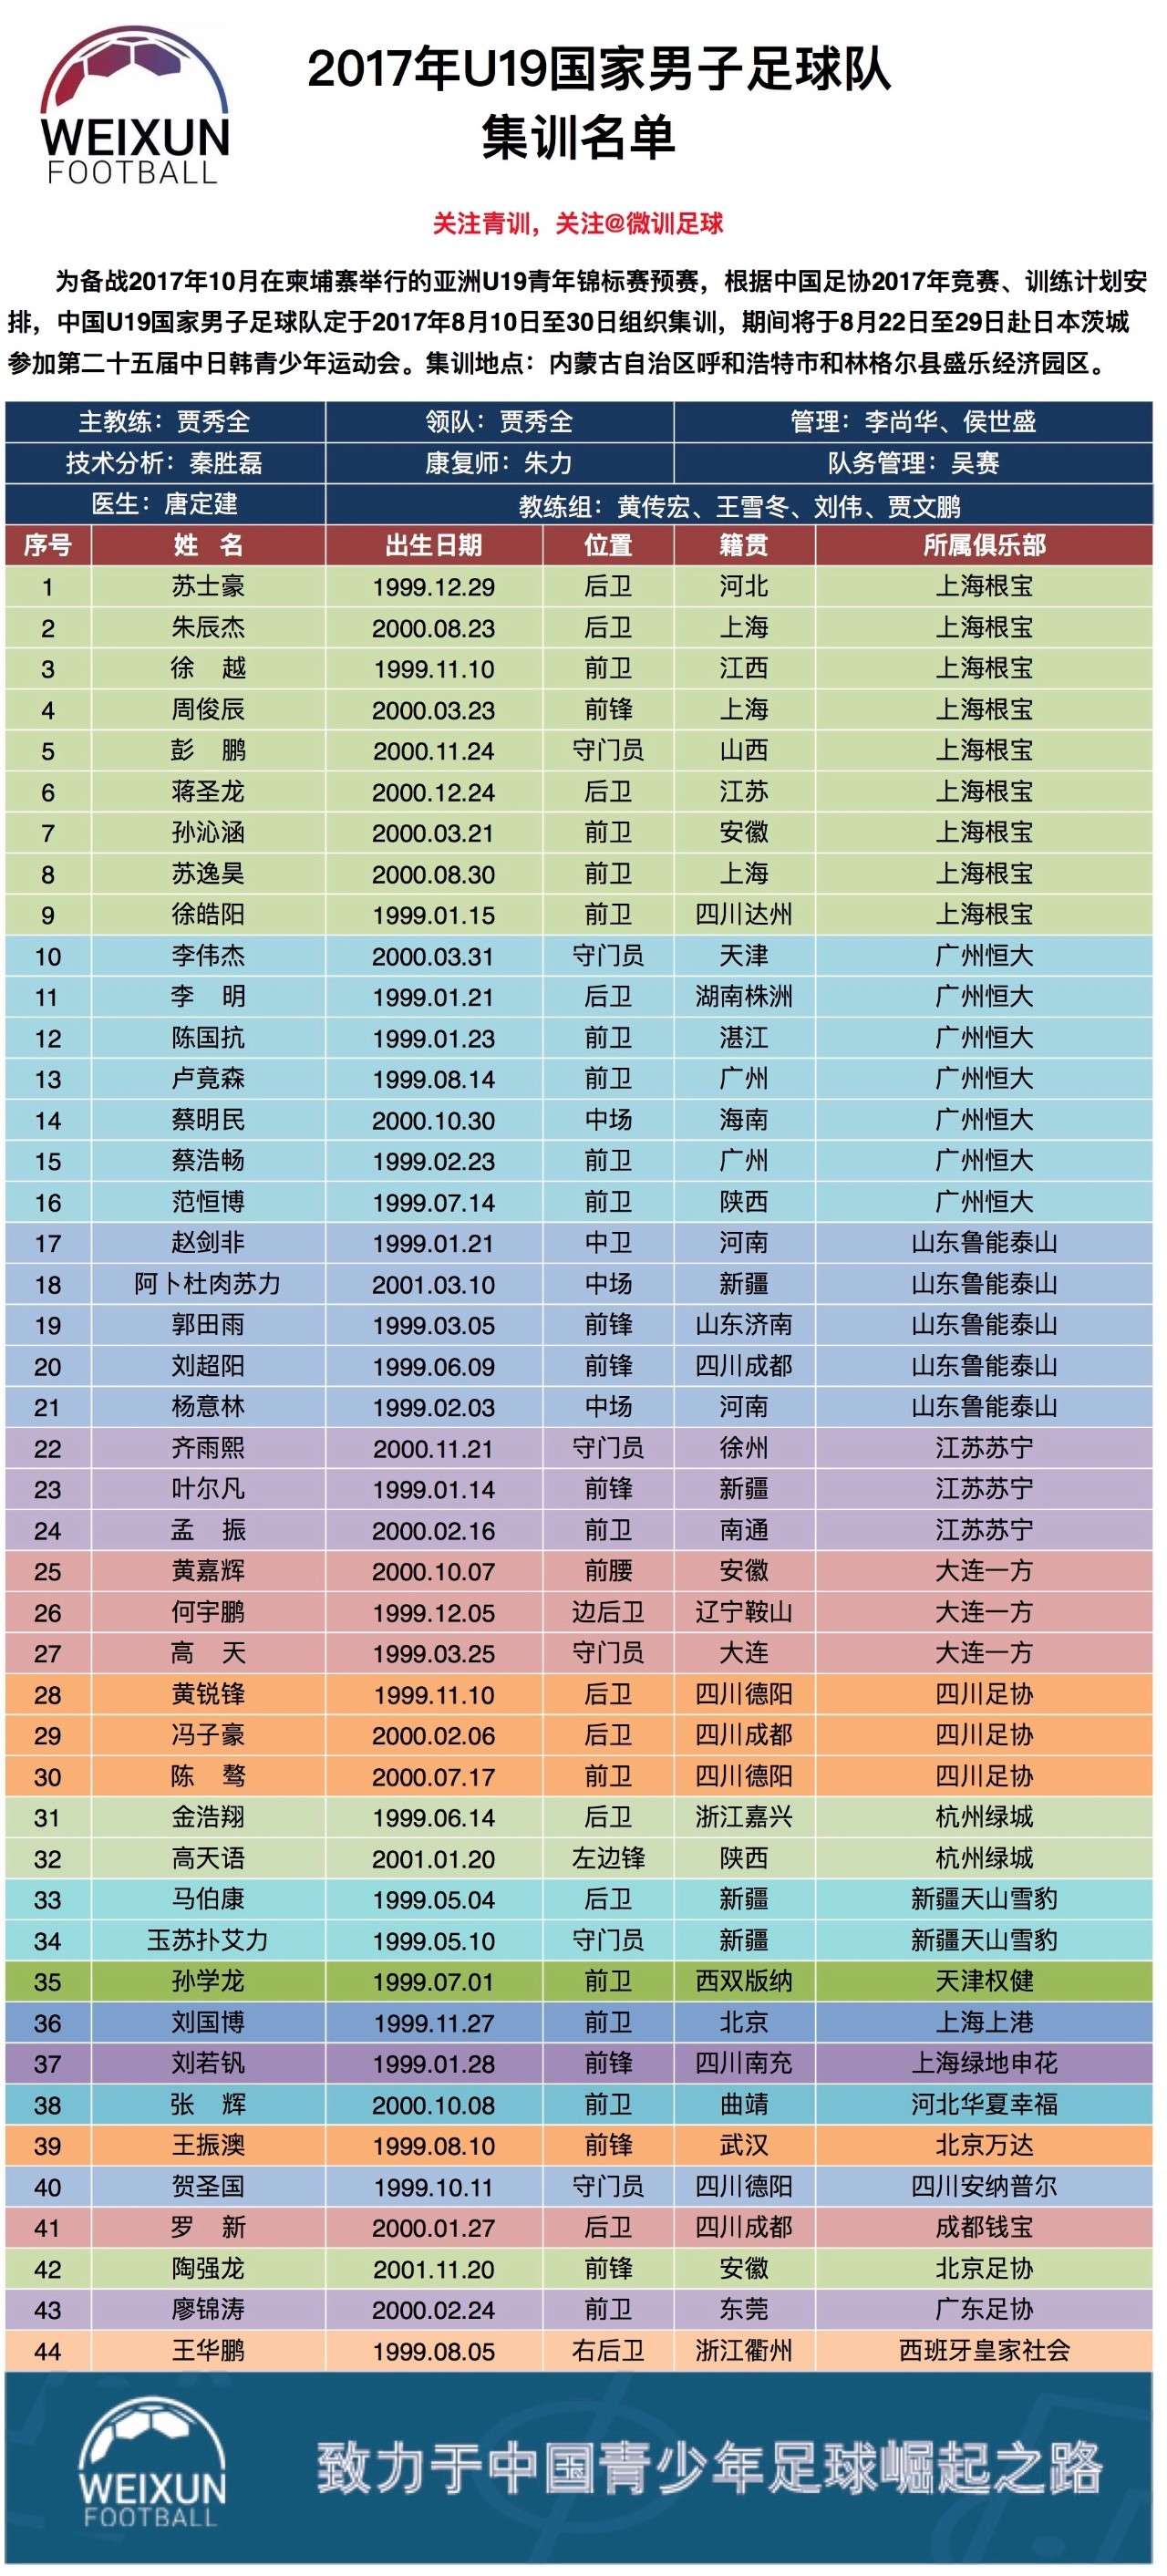 中国足协国家队最新一期集训名单:上海海港6名球员入选